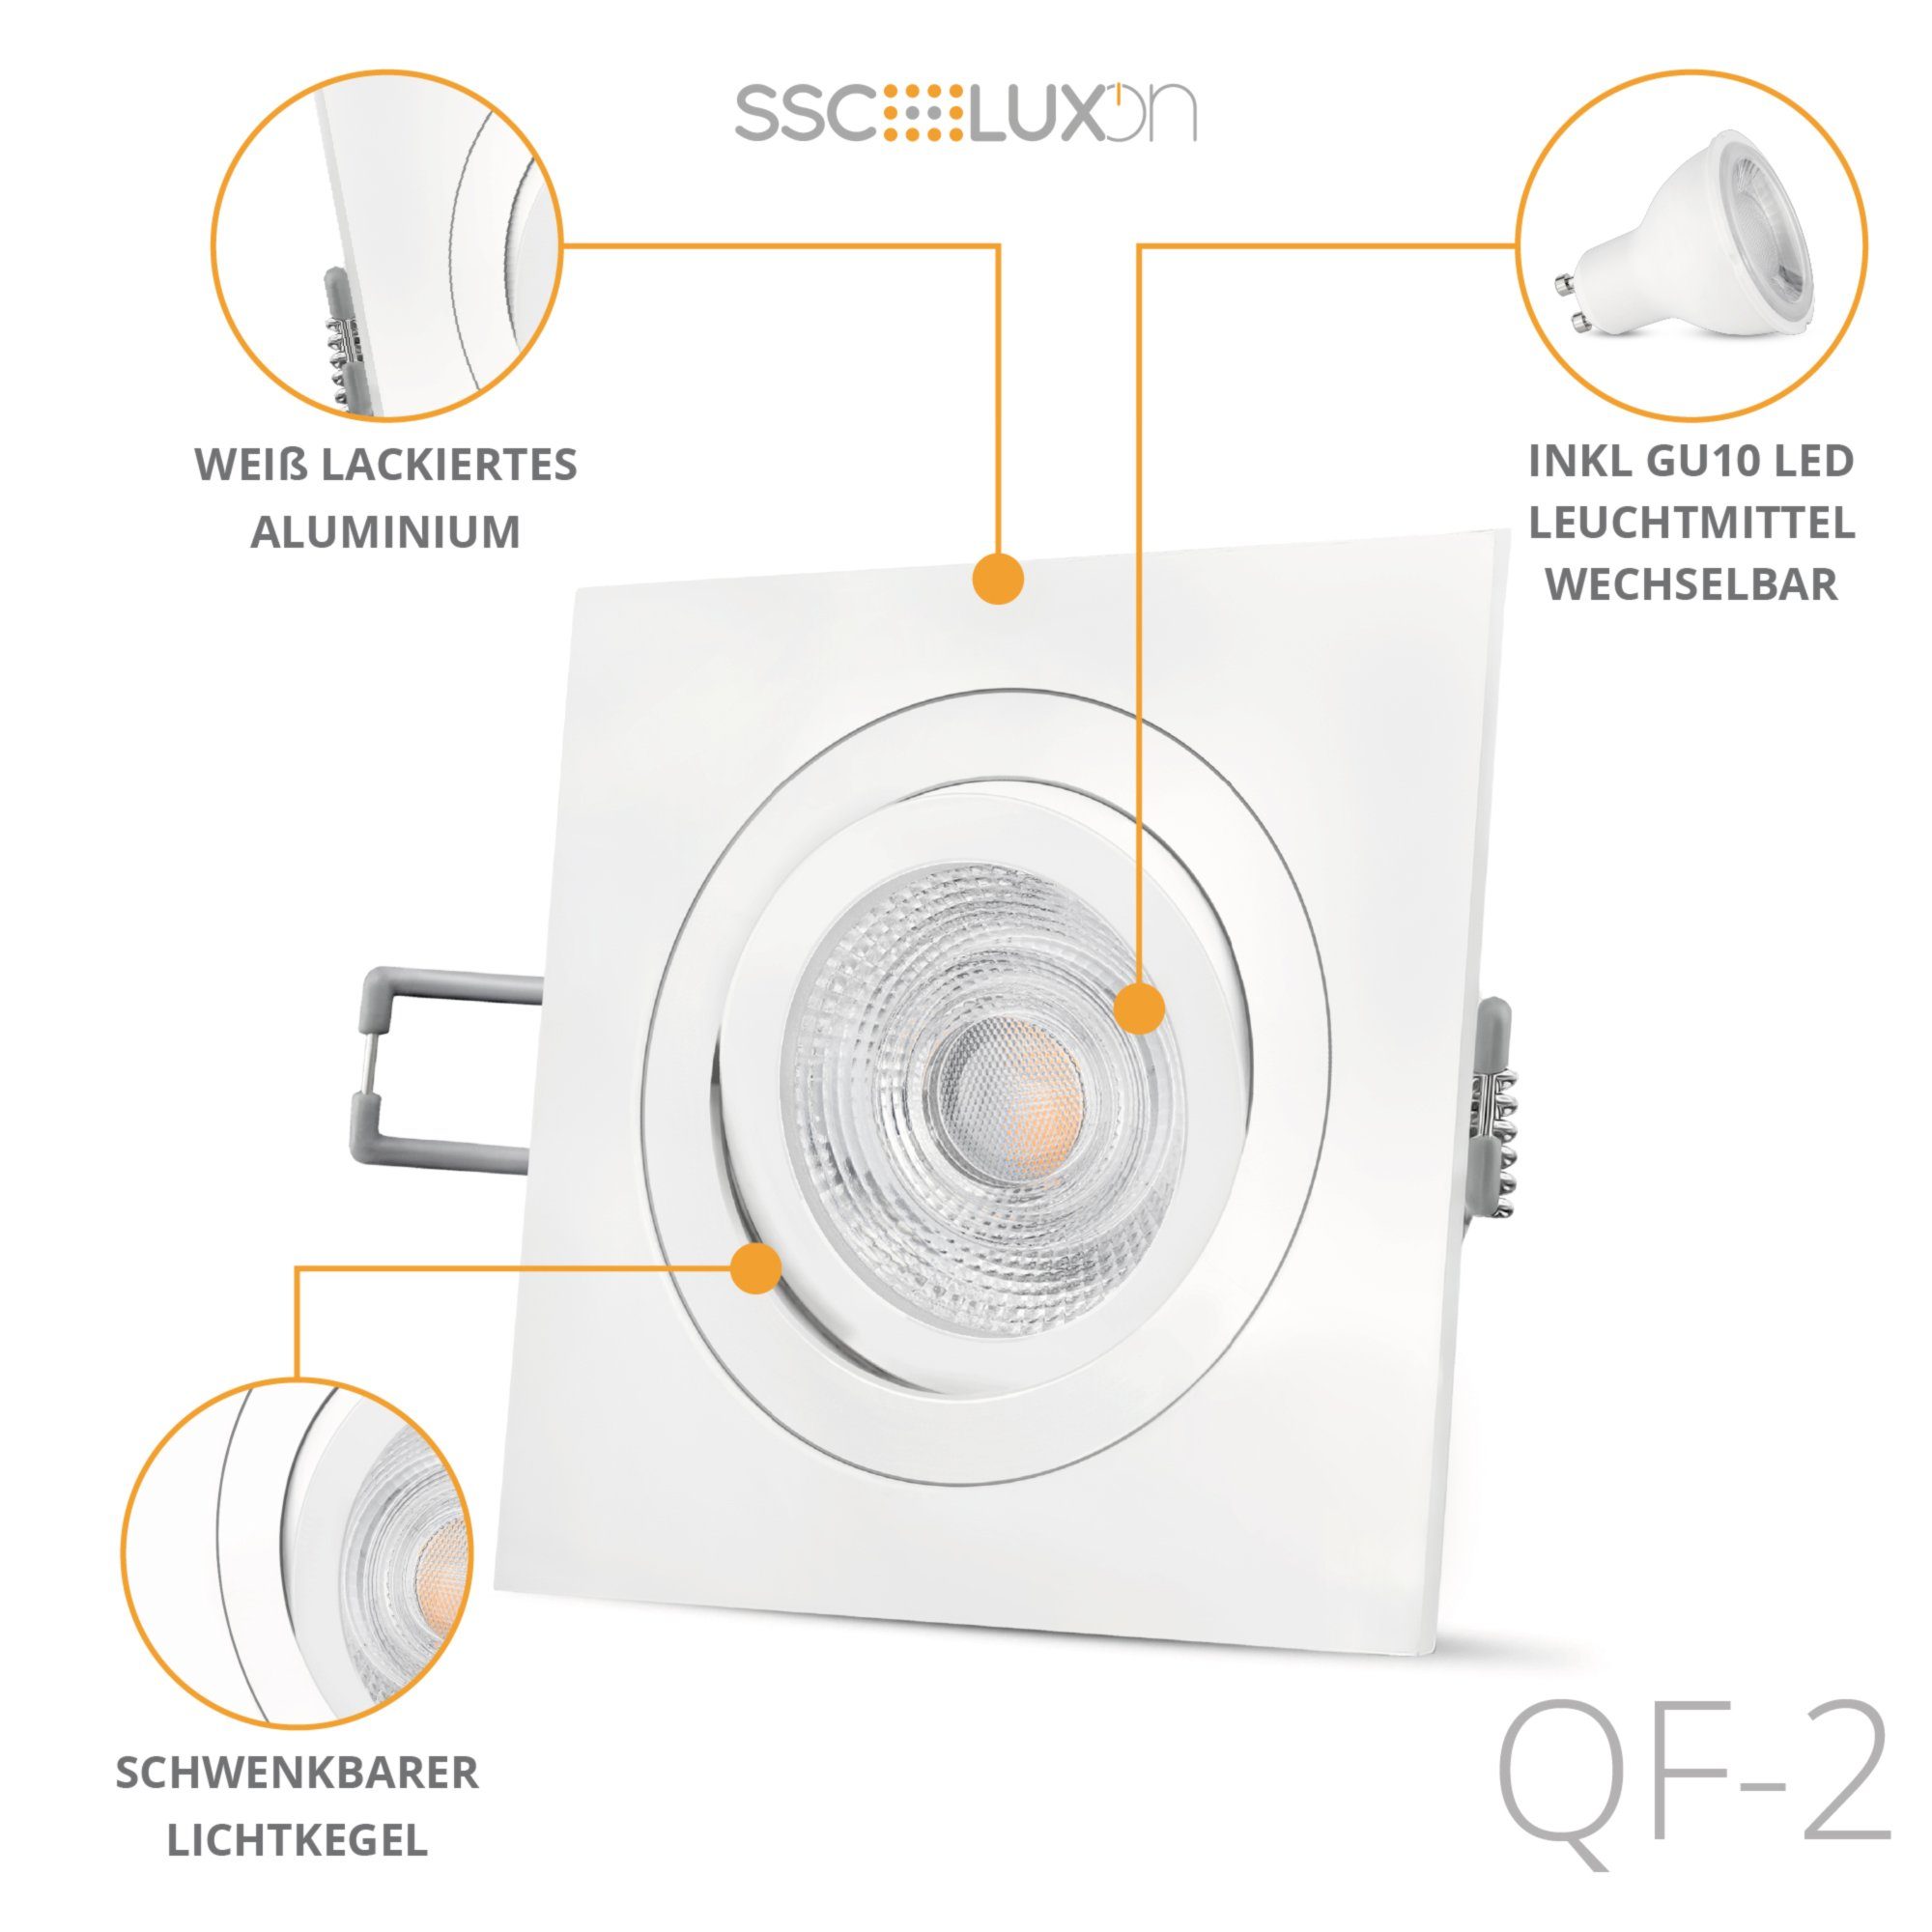 Einbaustrahler schwenkbar QF-2 LED SSC-LUXon LED GU10 mit LED, Warmweiß weiss quadratisch Einbaustrahler